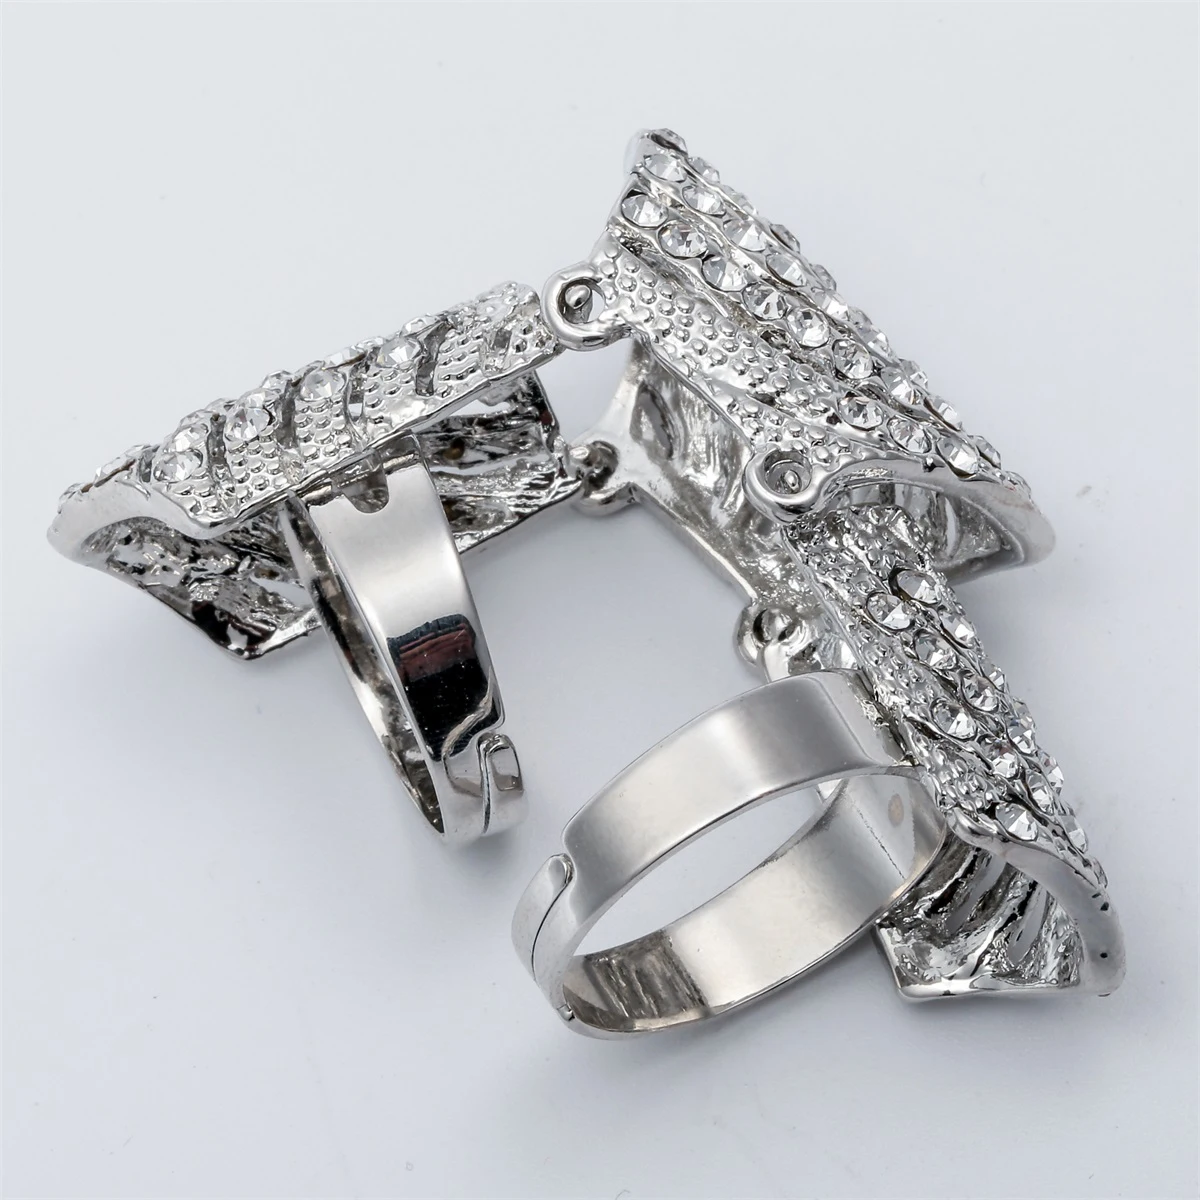 Yacq двойной полный палец костяшки доспехи длинное кольцо Кристалл Панк ювелирные изделия подарок для женщин ее античный серебряный золотой цвет RM02 дропшиппинг